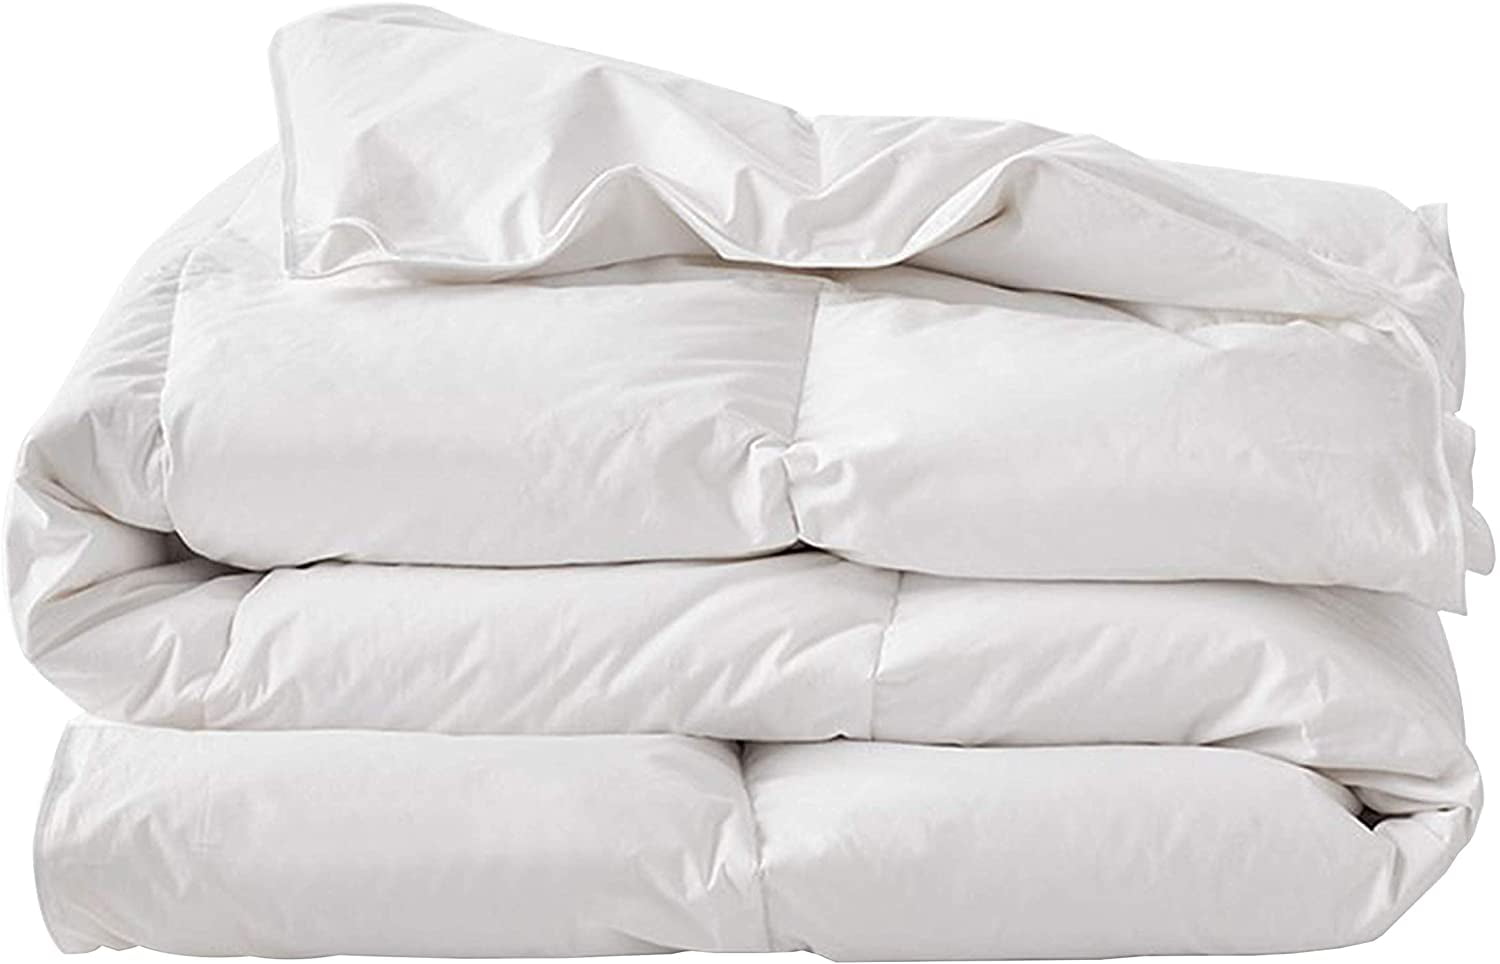 White Certified Organic Cotton 350 TC Bedding Set-Sheet set King Size 